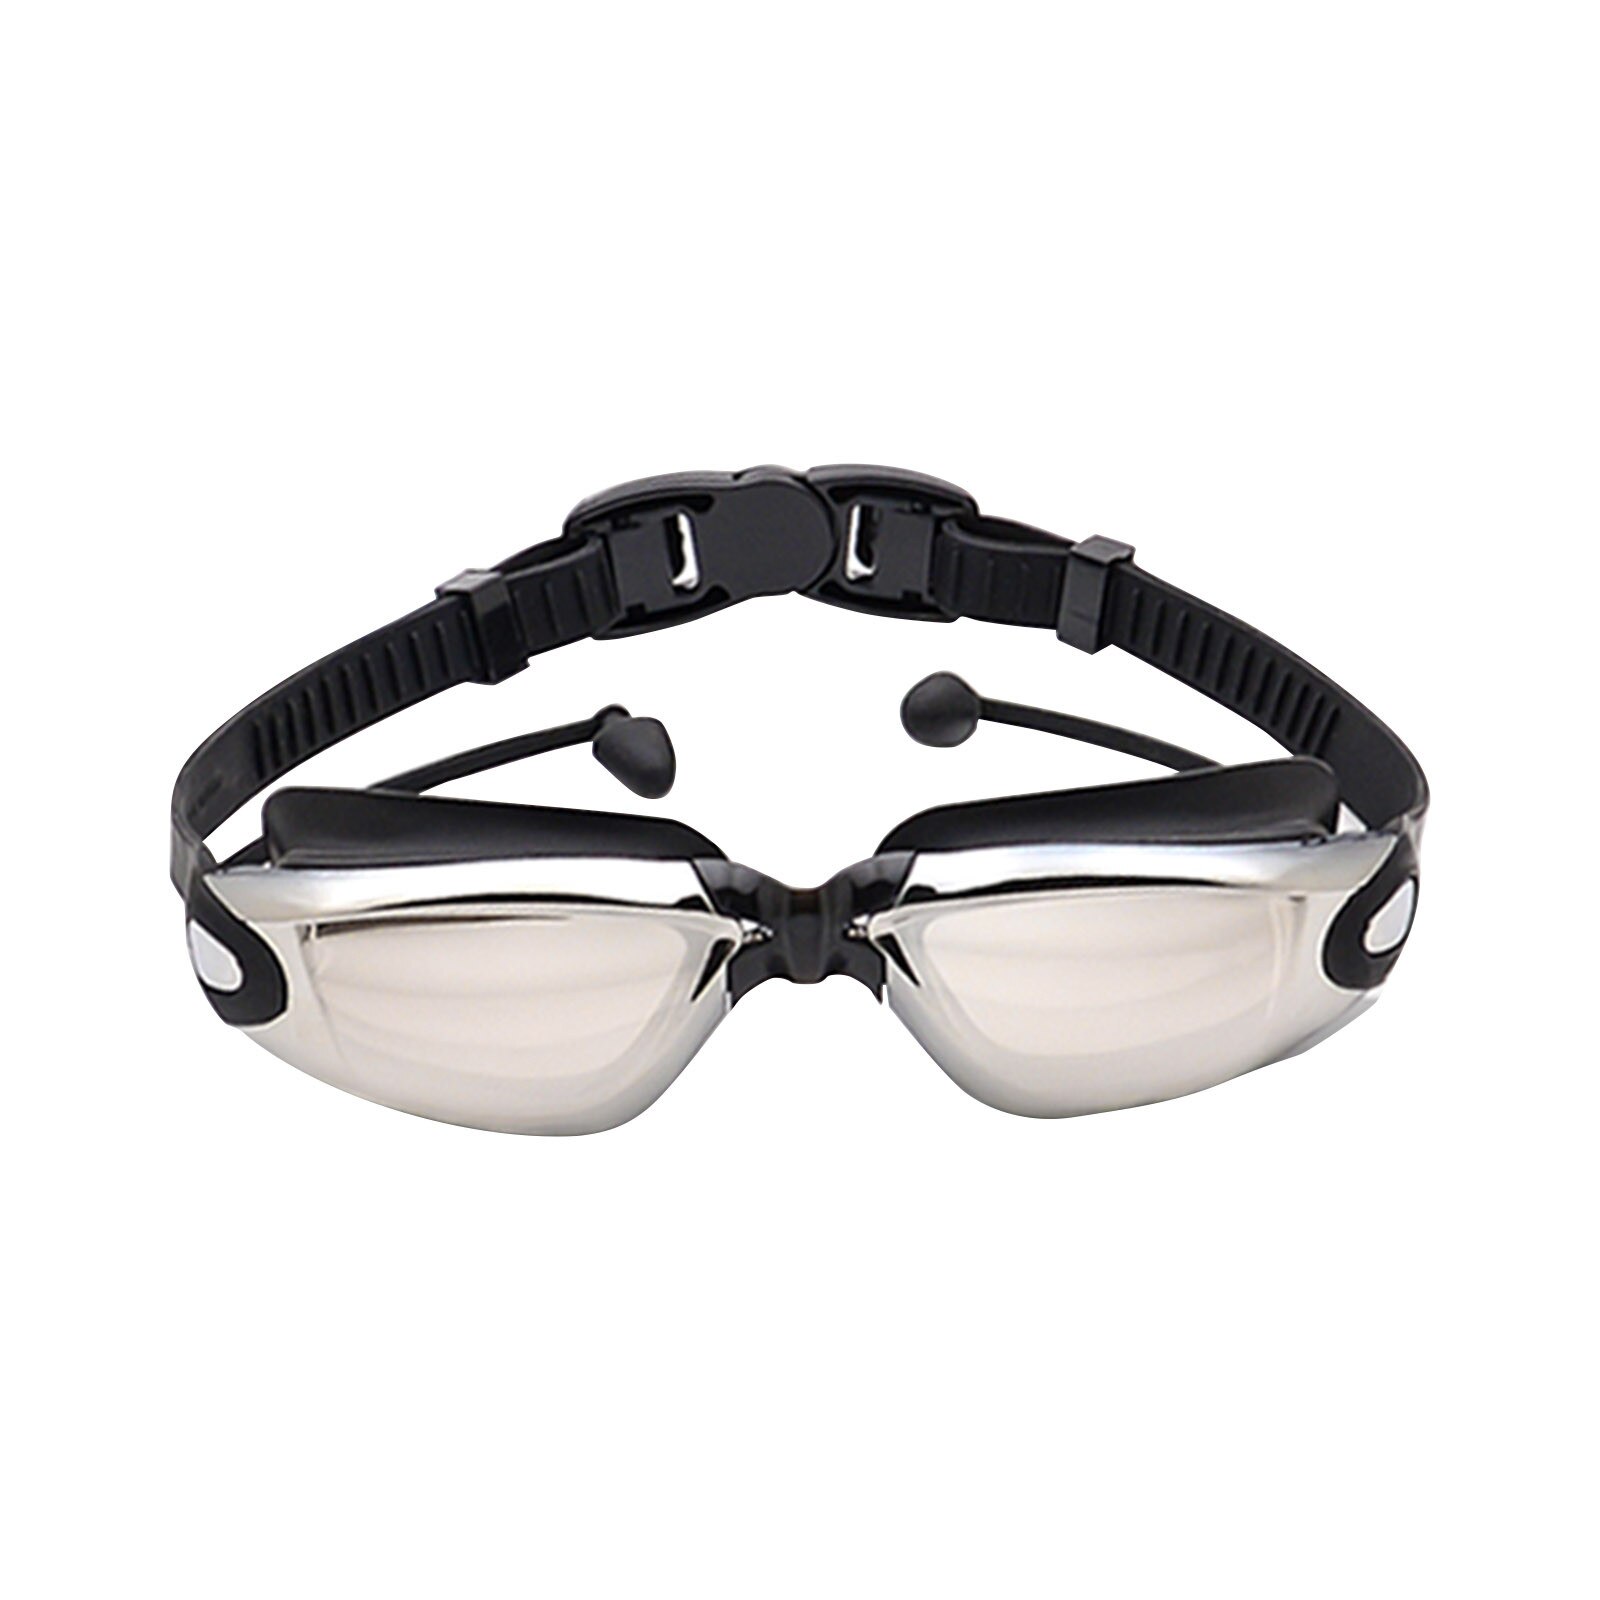 2 In 1 Volwassen Hd Waterdicht En Anti-Fog Siliconen Zwembril Met Oordopjes Anti-Vertigo Duiken Bril voor Beginners